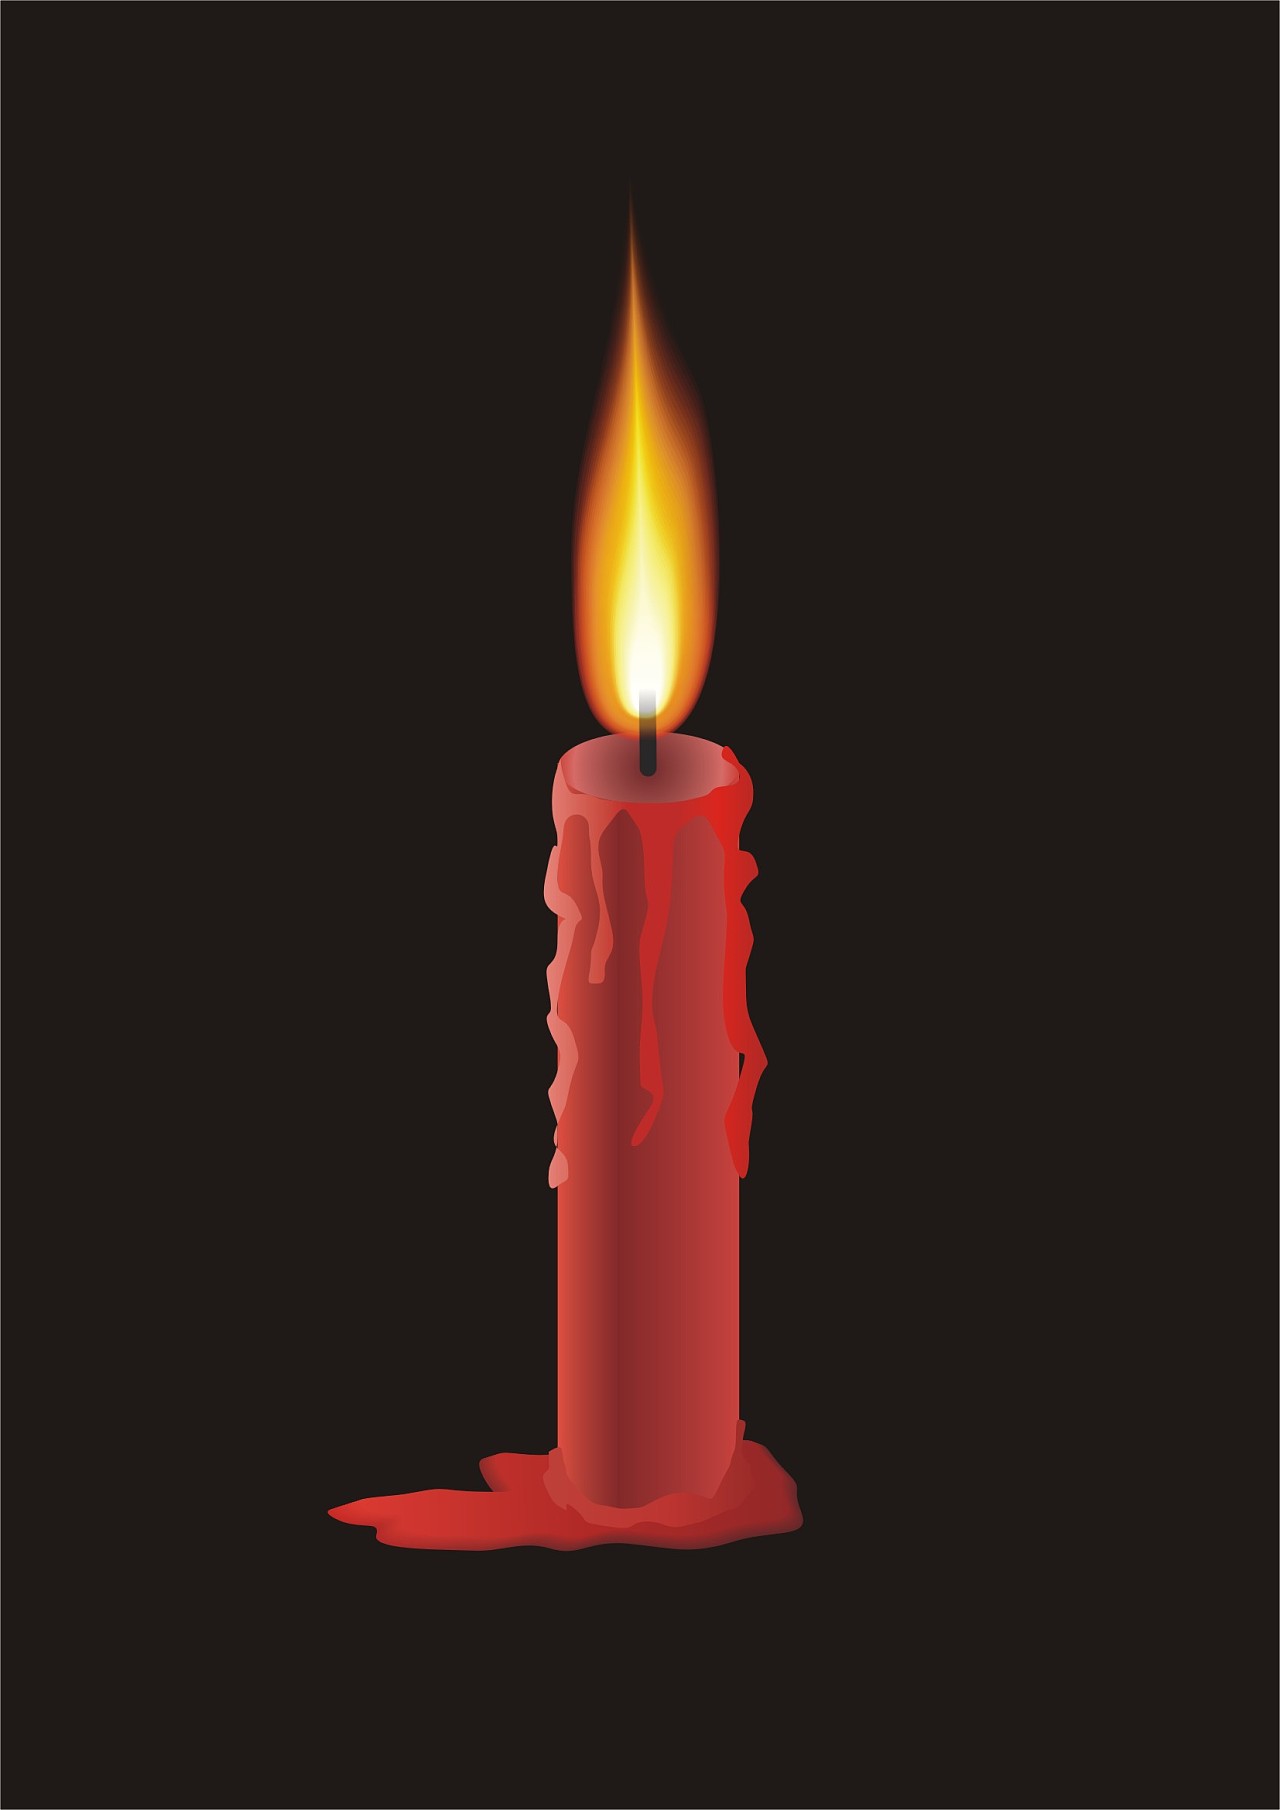 图片素材 : 环境, 红, 蜡烛, 灯光, 圣诞装饰 2258x4236 - - 1161663 - 素材中国, 高清壁纸 - PxHere摄影图库